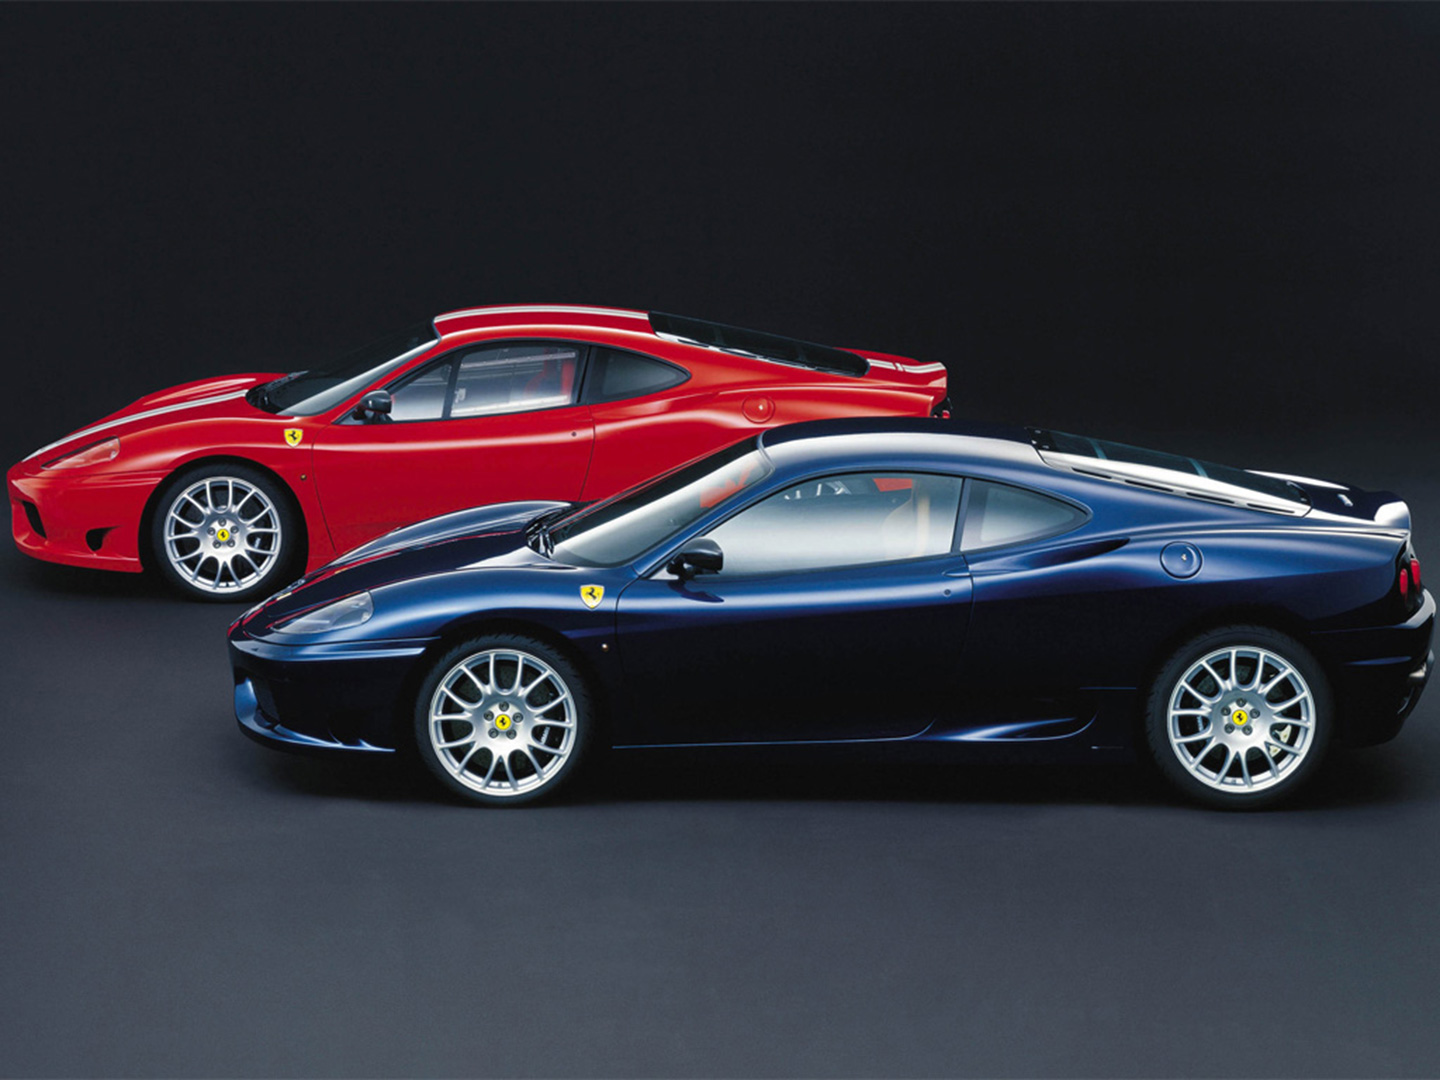 Ferrari Challenge Stradale (2003) - Ferrari.com